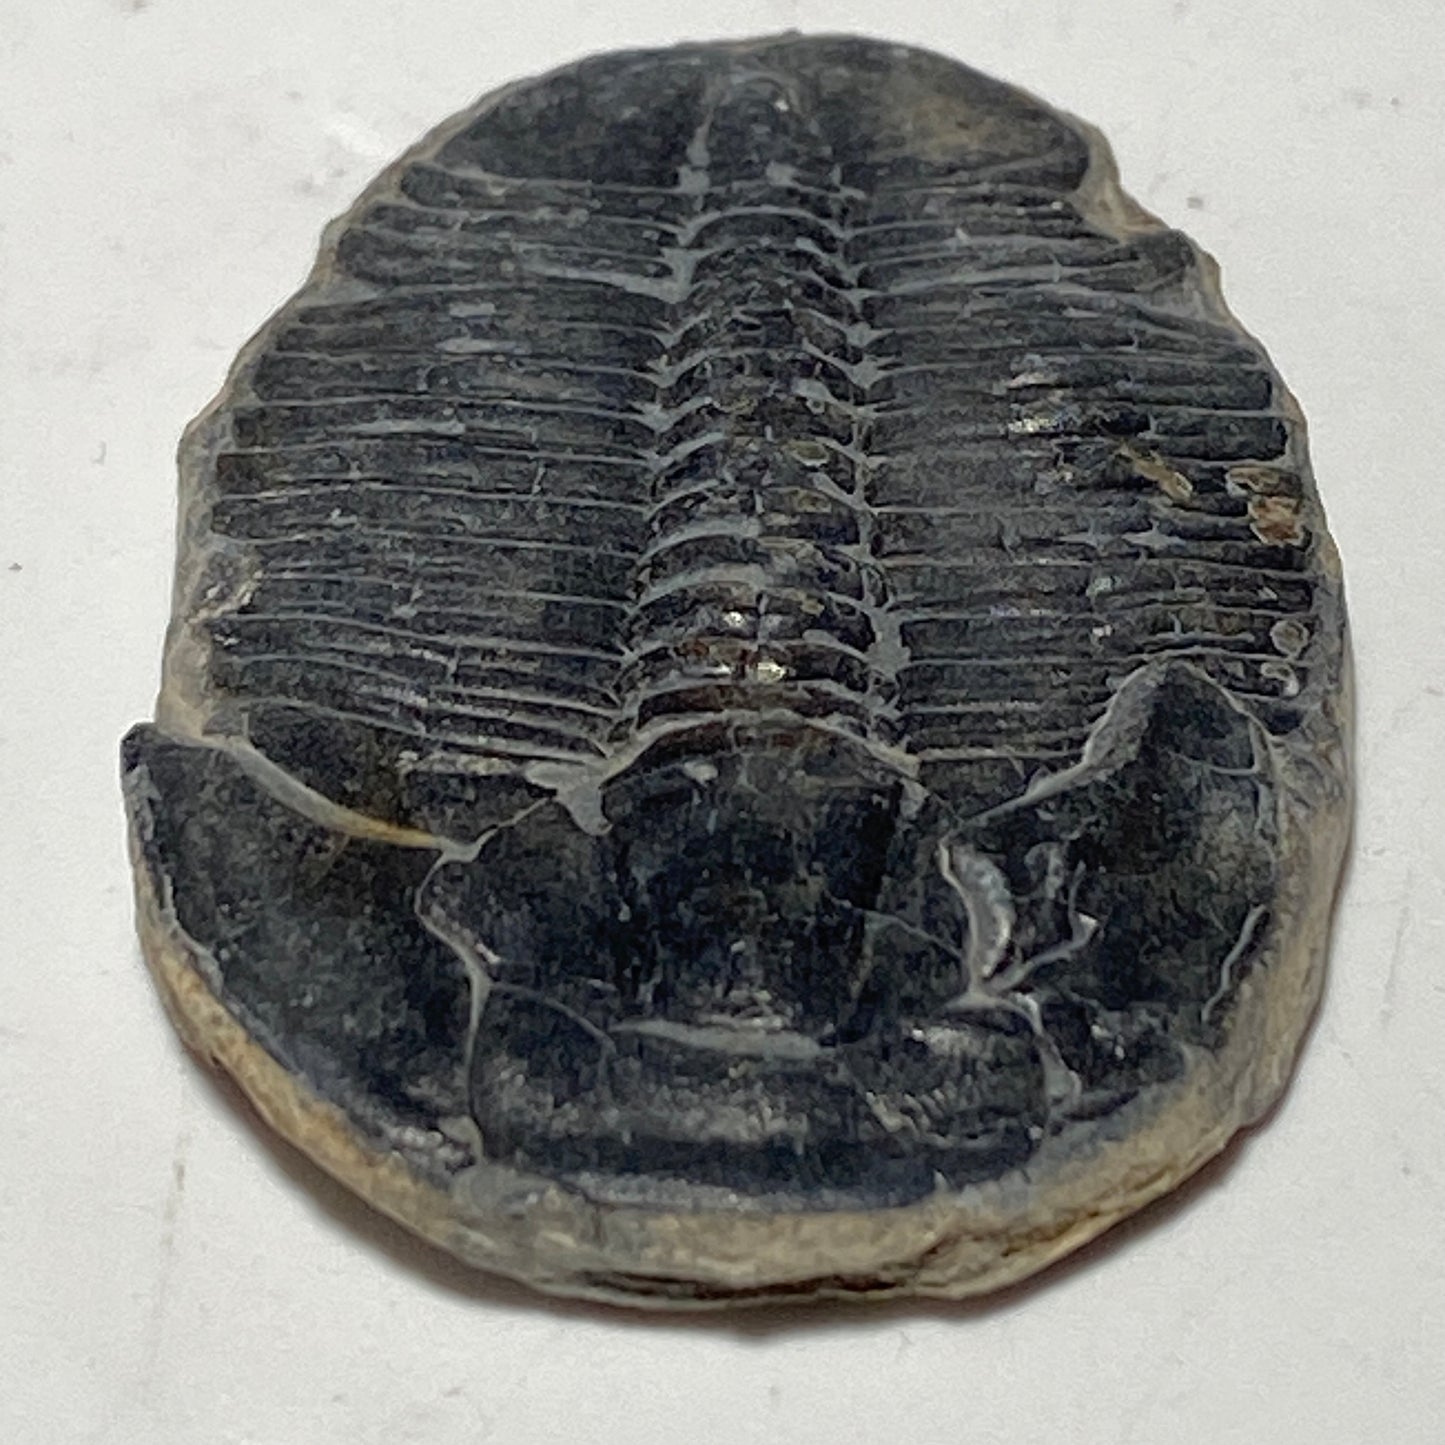 Trilobite fossil, Elrathia King from Utah | 1 inch long, Utah fossil, fossil collectible, trilobite specimen, fossil lover gift